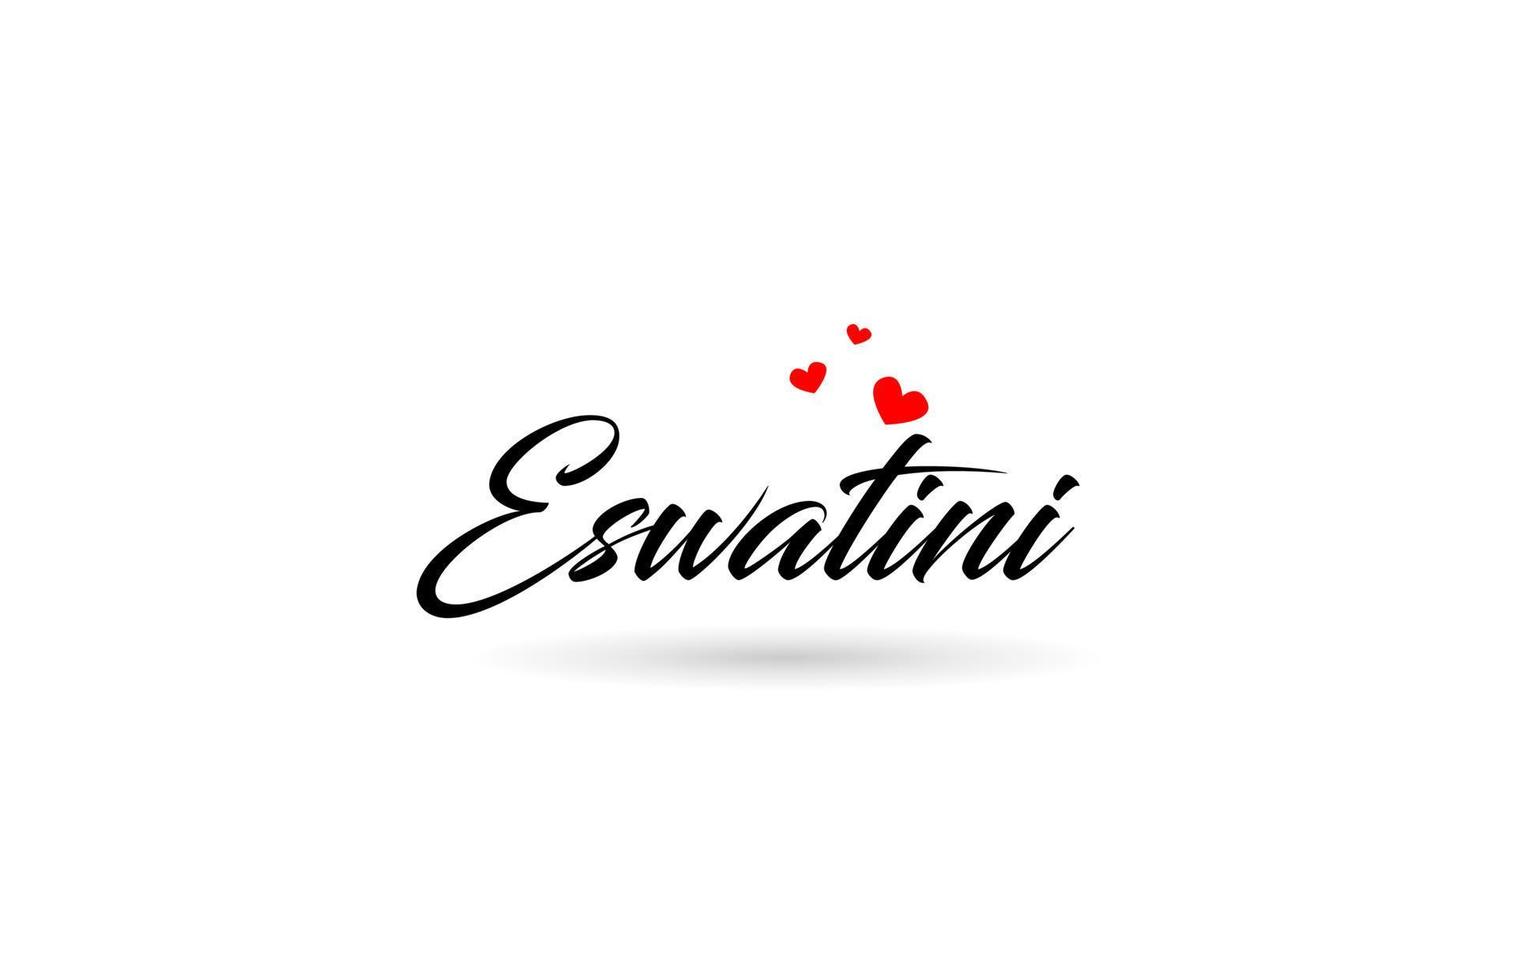 eswatini naam land woord met drie rood liefde hart. creatief typografie logo icoon ontwerp vector